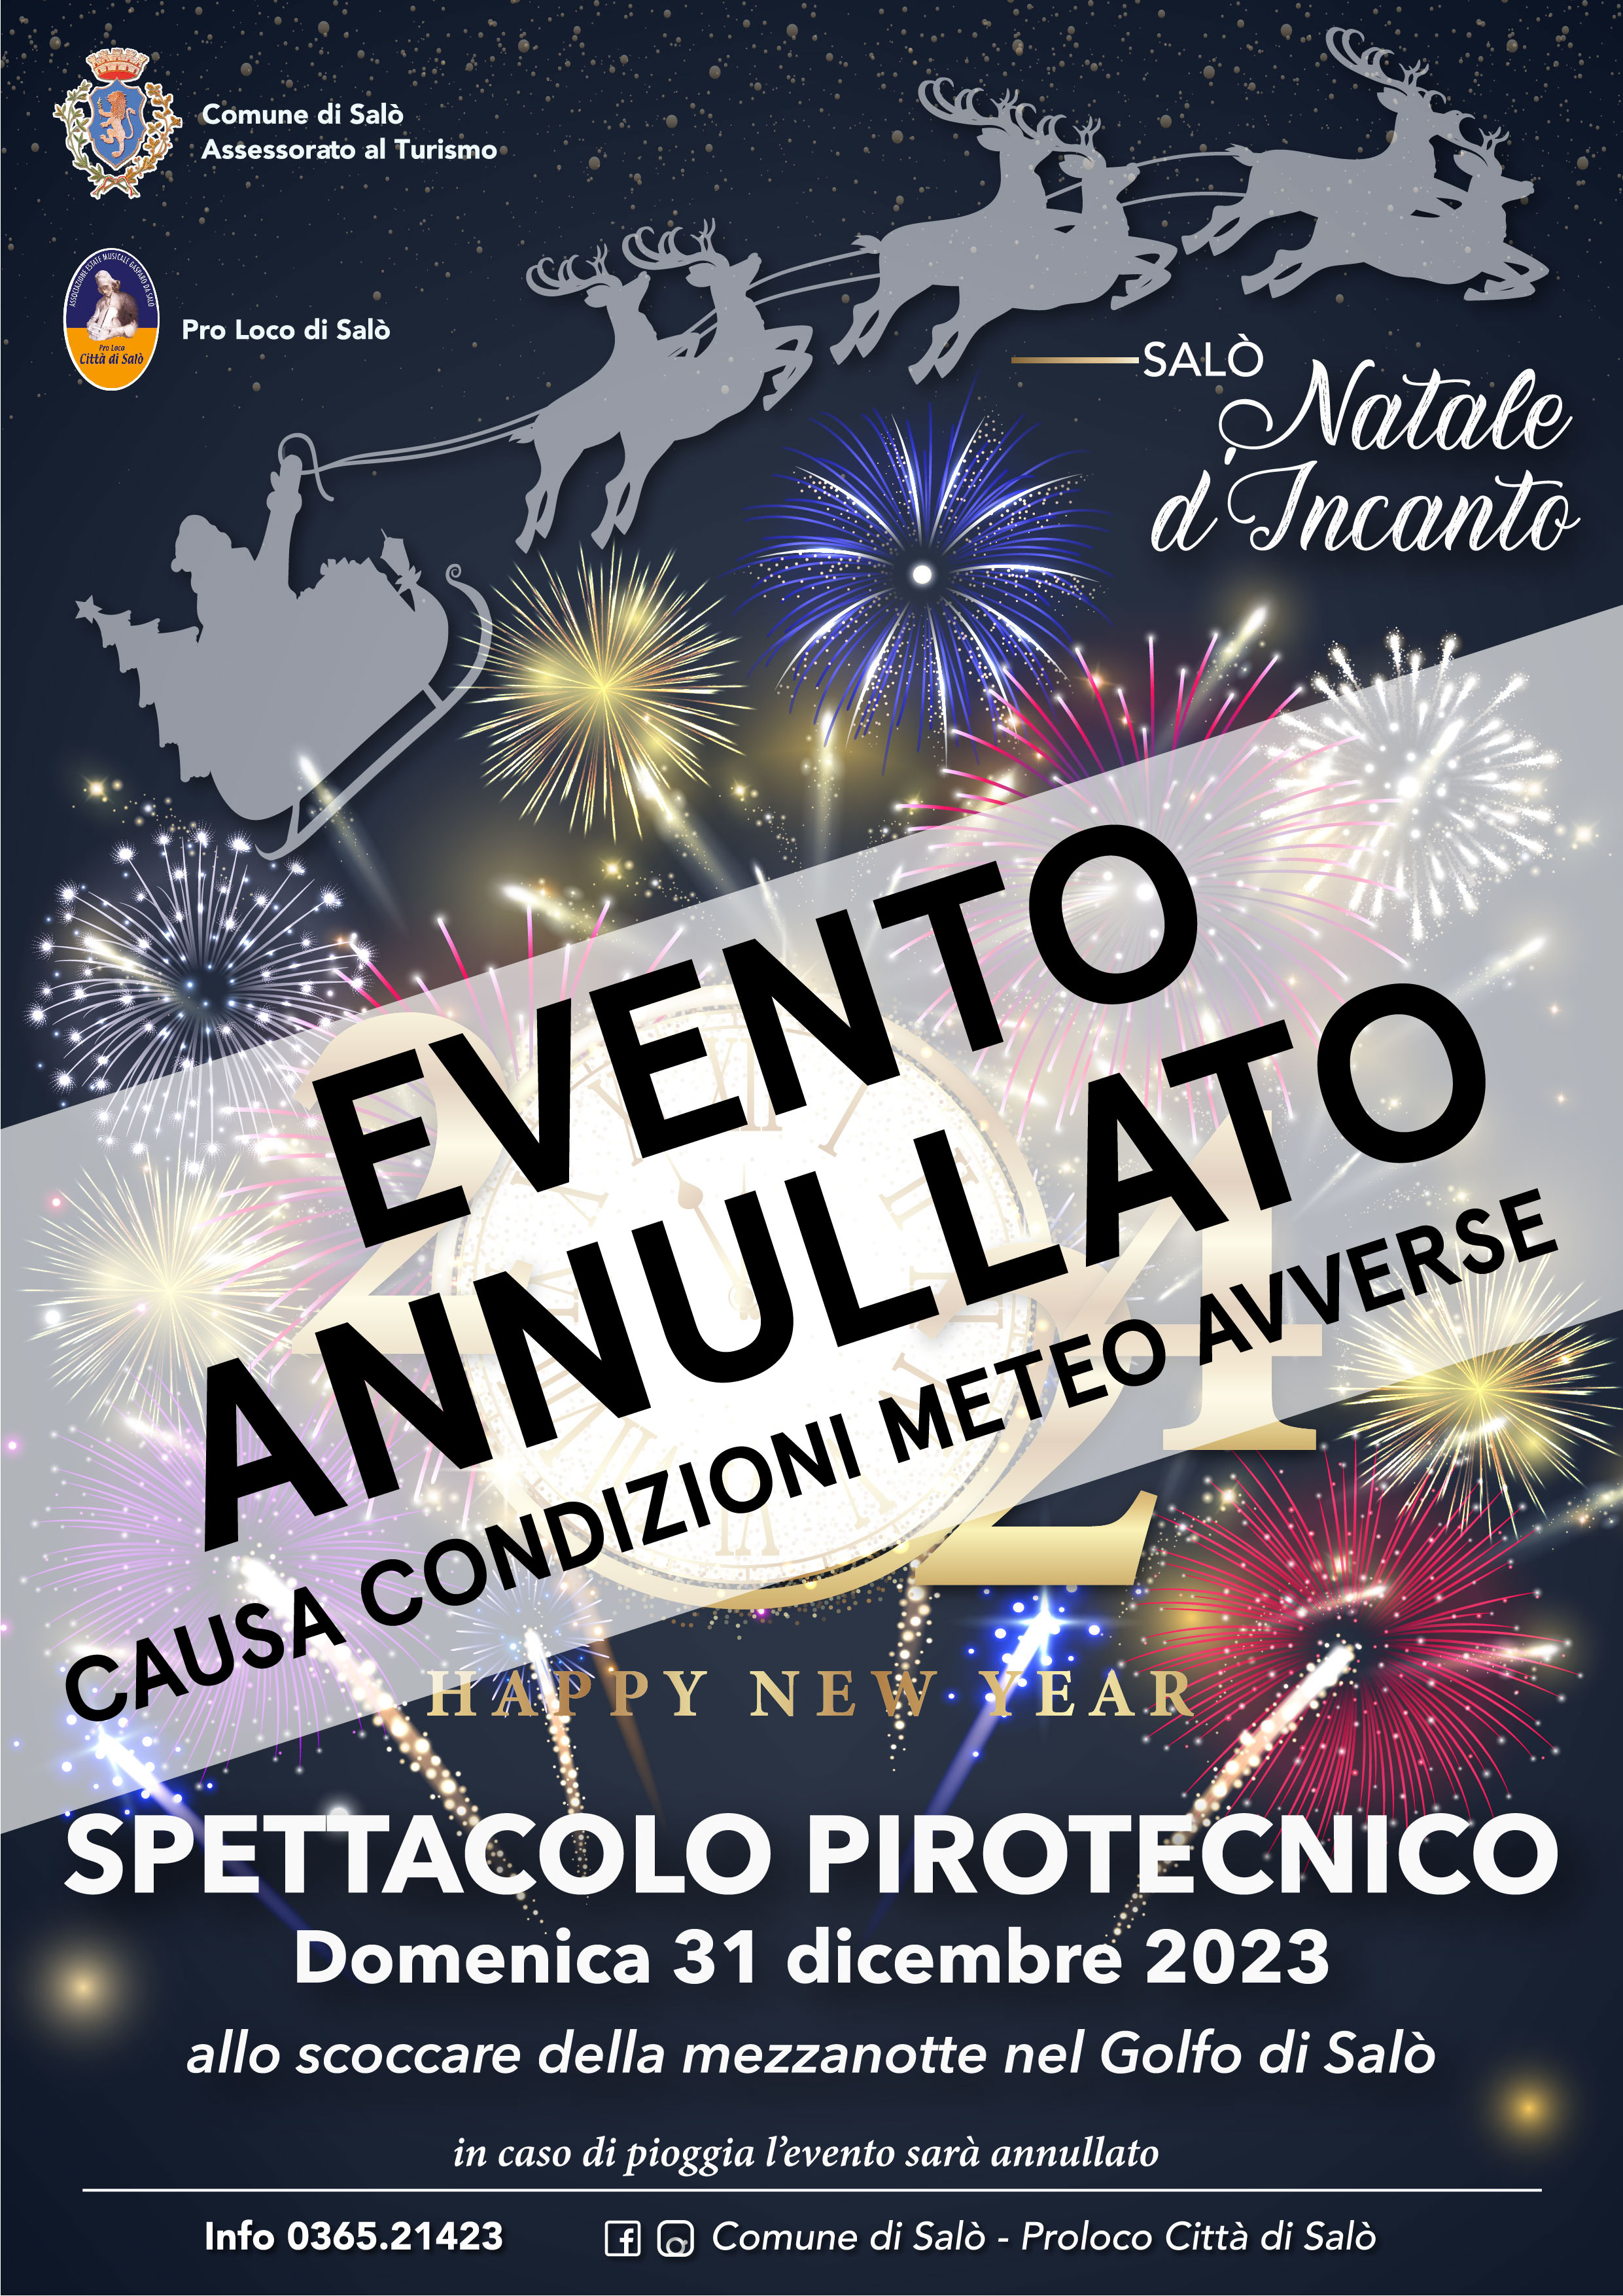 Immagine di copertina per annullato evento - SPETTACOLO PIROTECNICO 